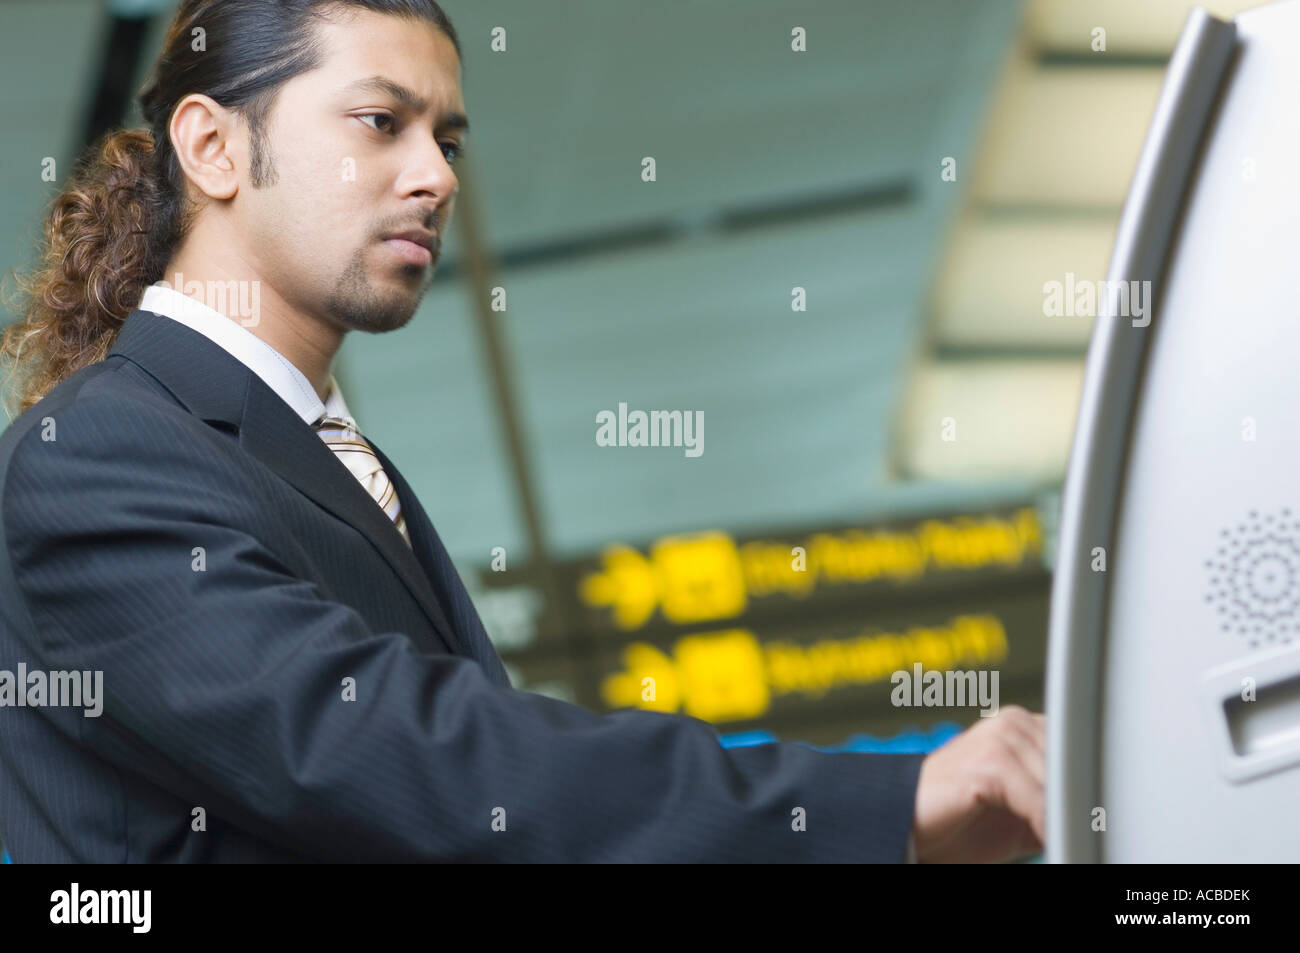 Portrait d'un homme d'affaires à l'aide d'une machine automatique de billets Banque D'Images